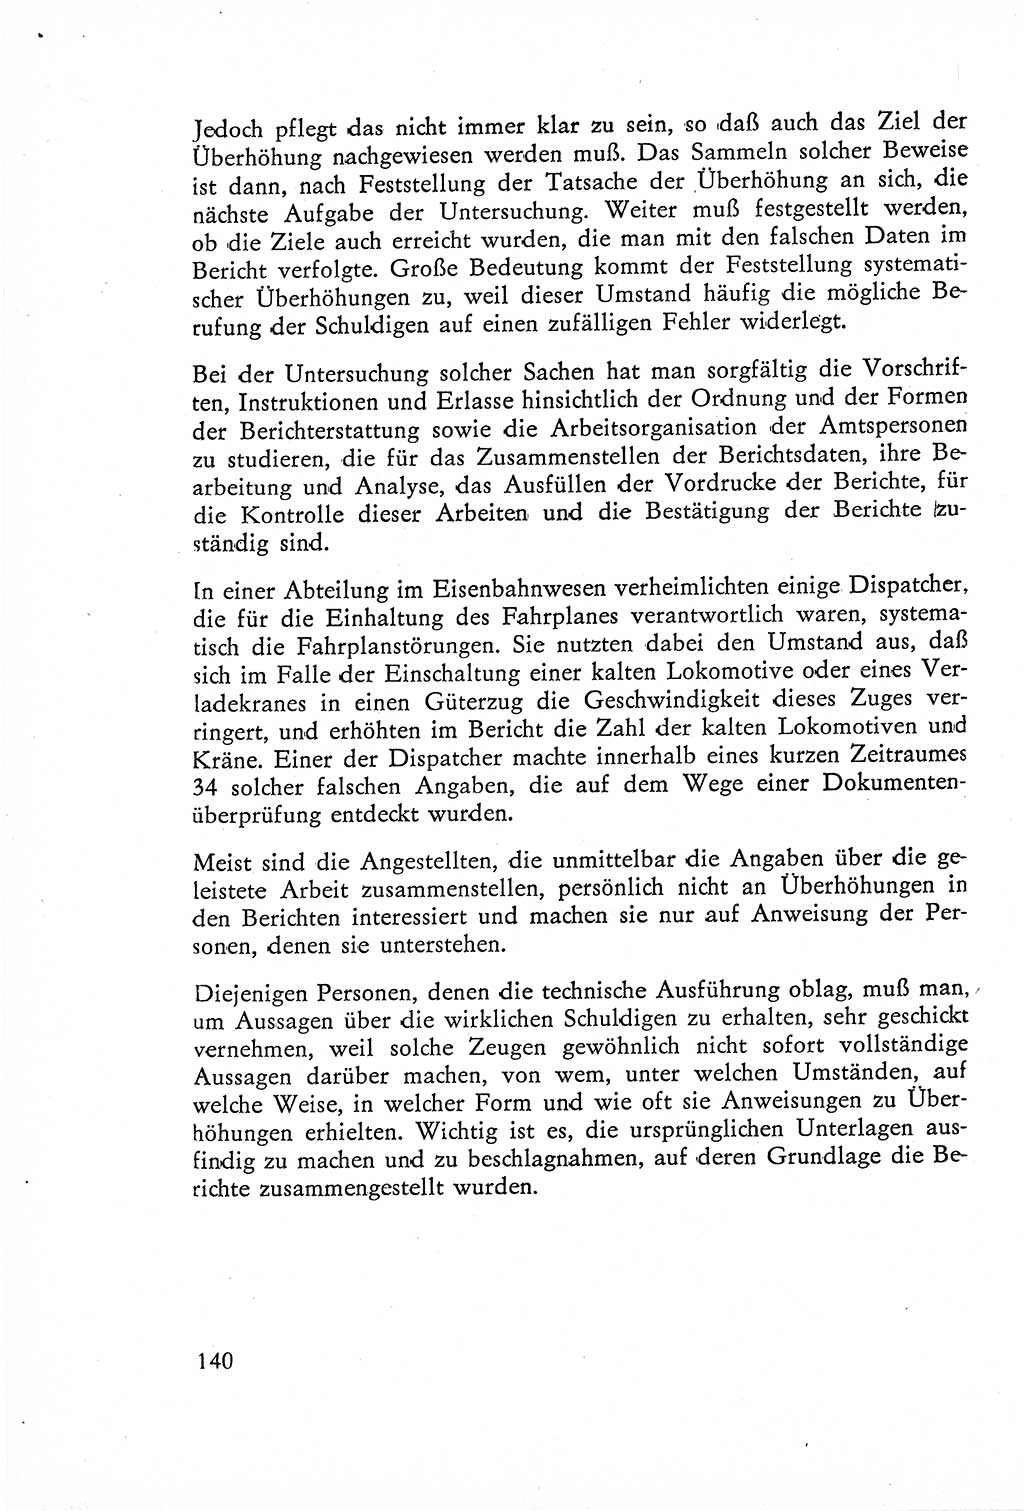 Die Untersuchung einzelner Verbrechensarten [Deutsche Demokratische Republik (DDR)] 1960, Seite 140 (Unters. Verbr.-Art. DDR 1960, S. 140)